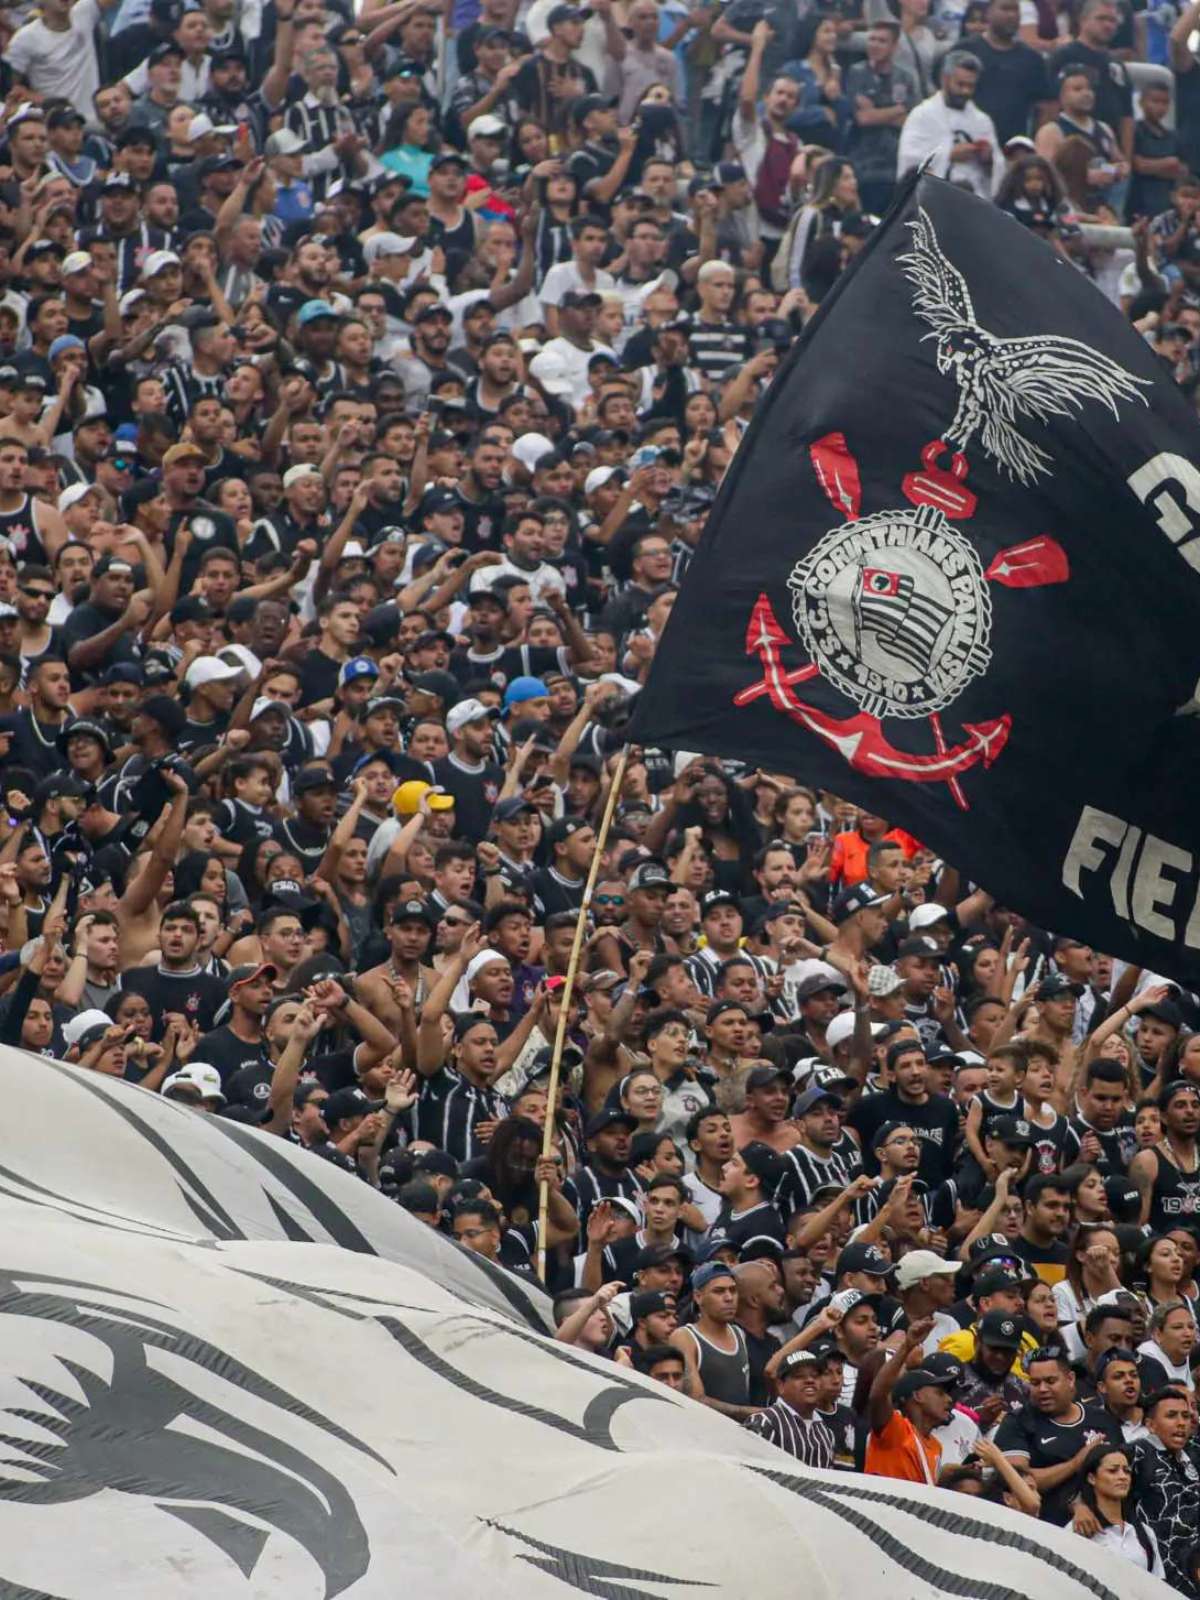 Augusto Melo fala sobre busca do Corinthians por executivo de futebol:  Anunciaremos em breve - Gazeta Esportiva